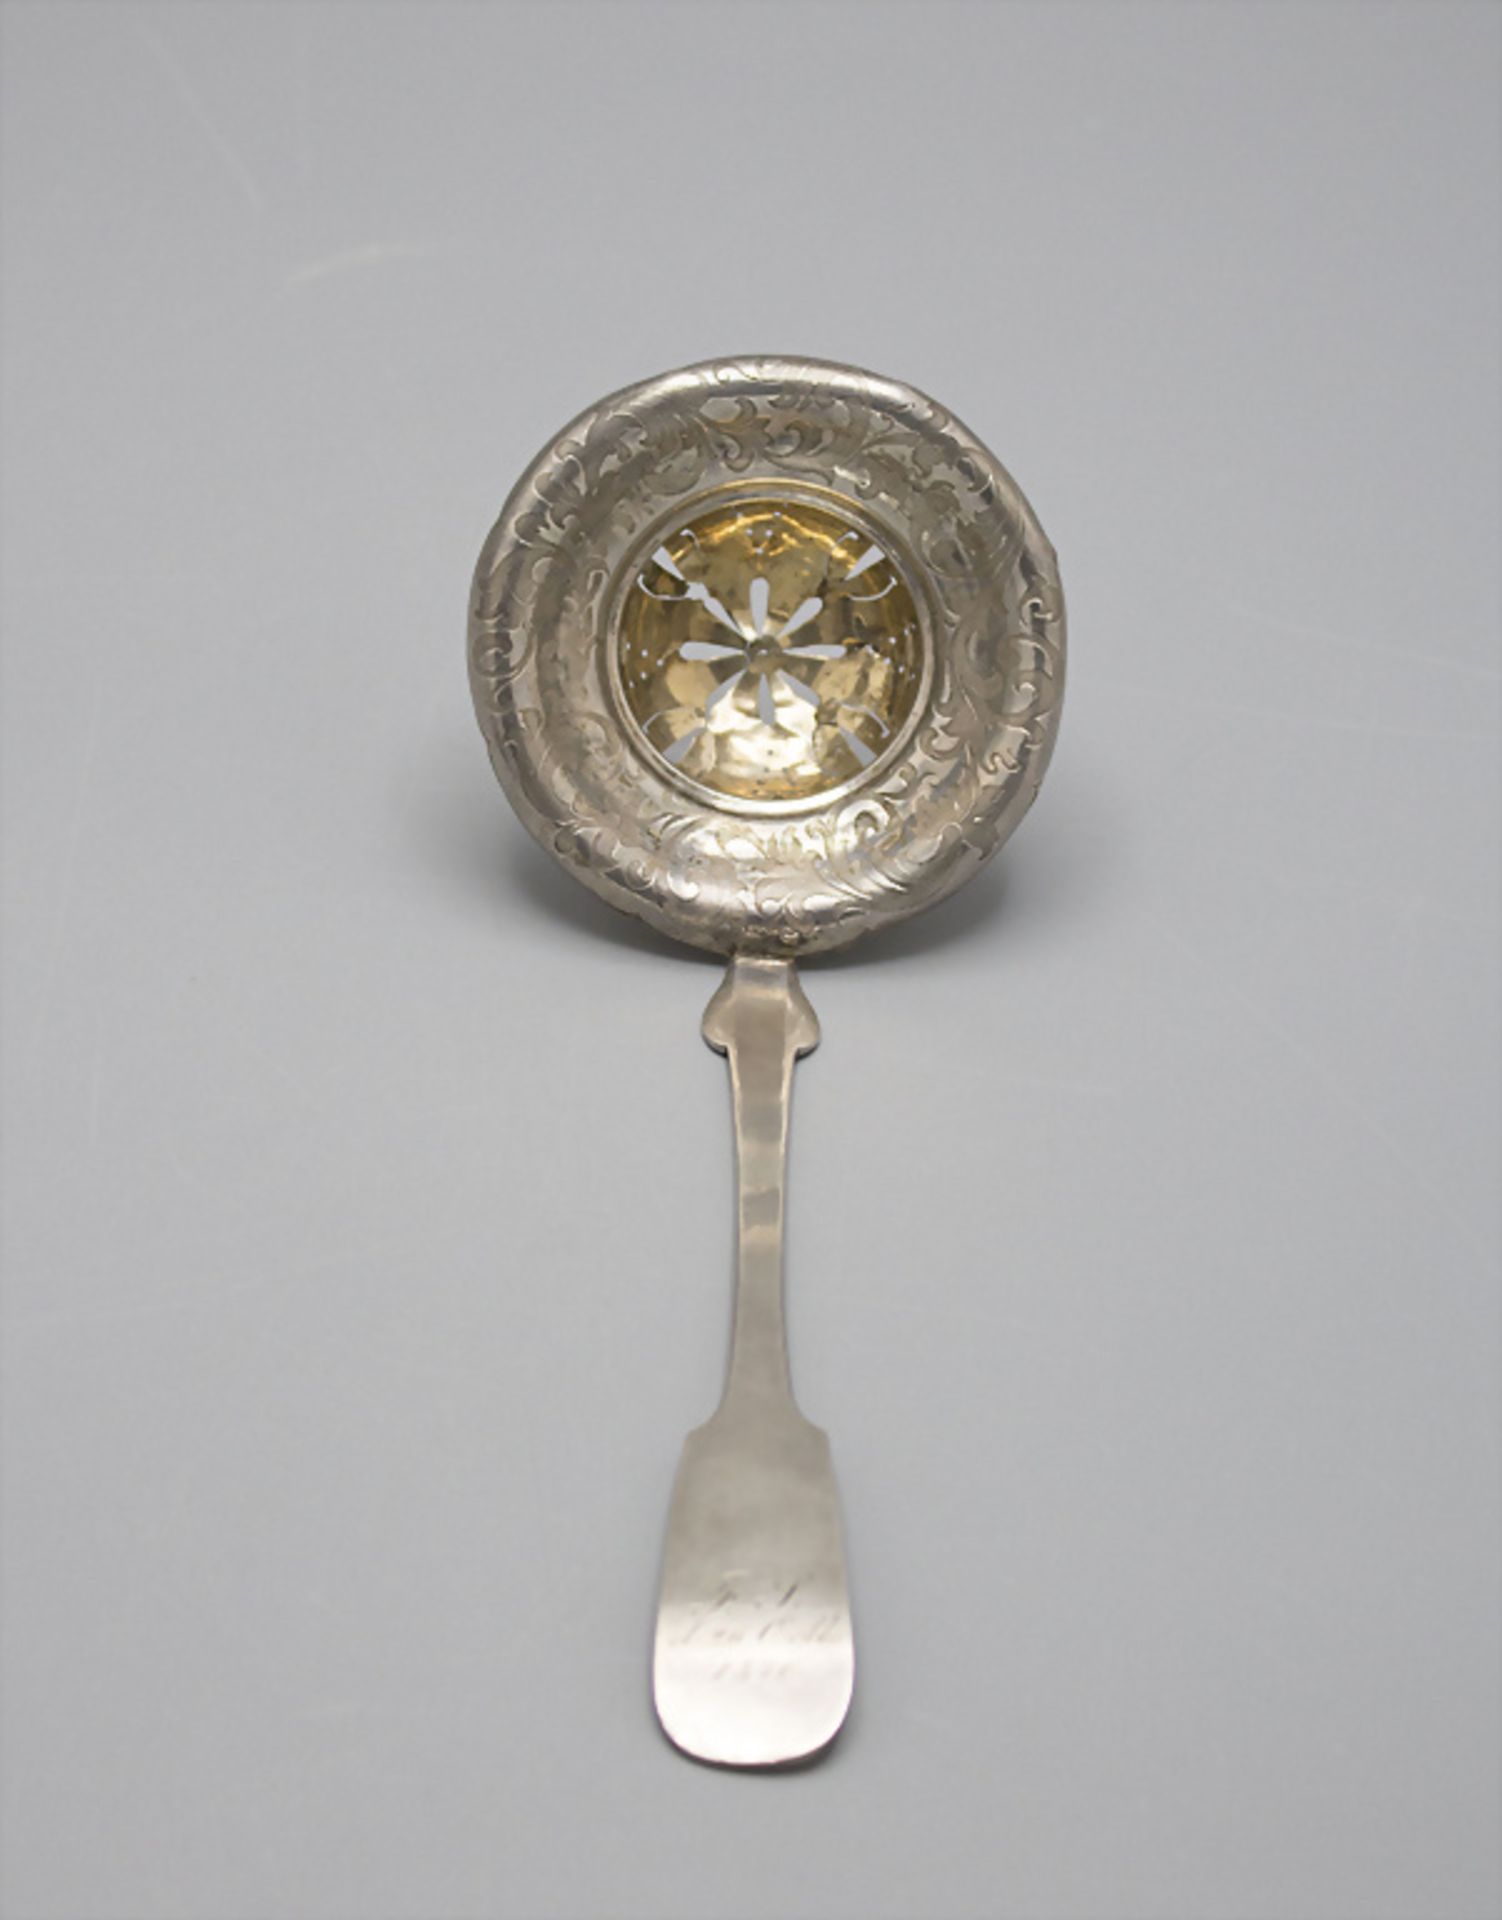 Teesieb / A silver tea strainer, Königsberg, 1866